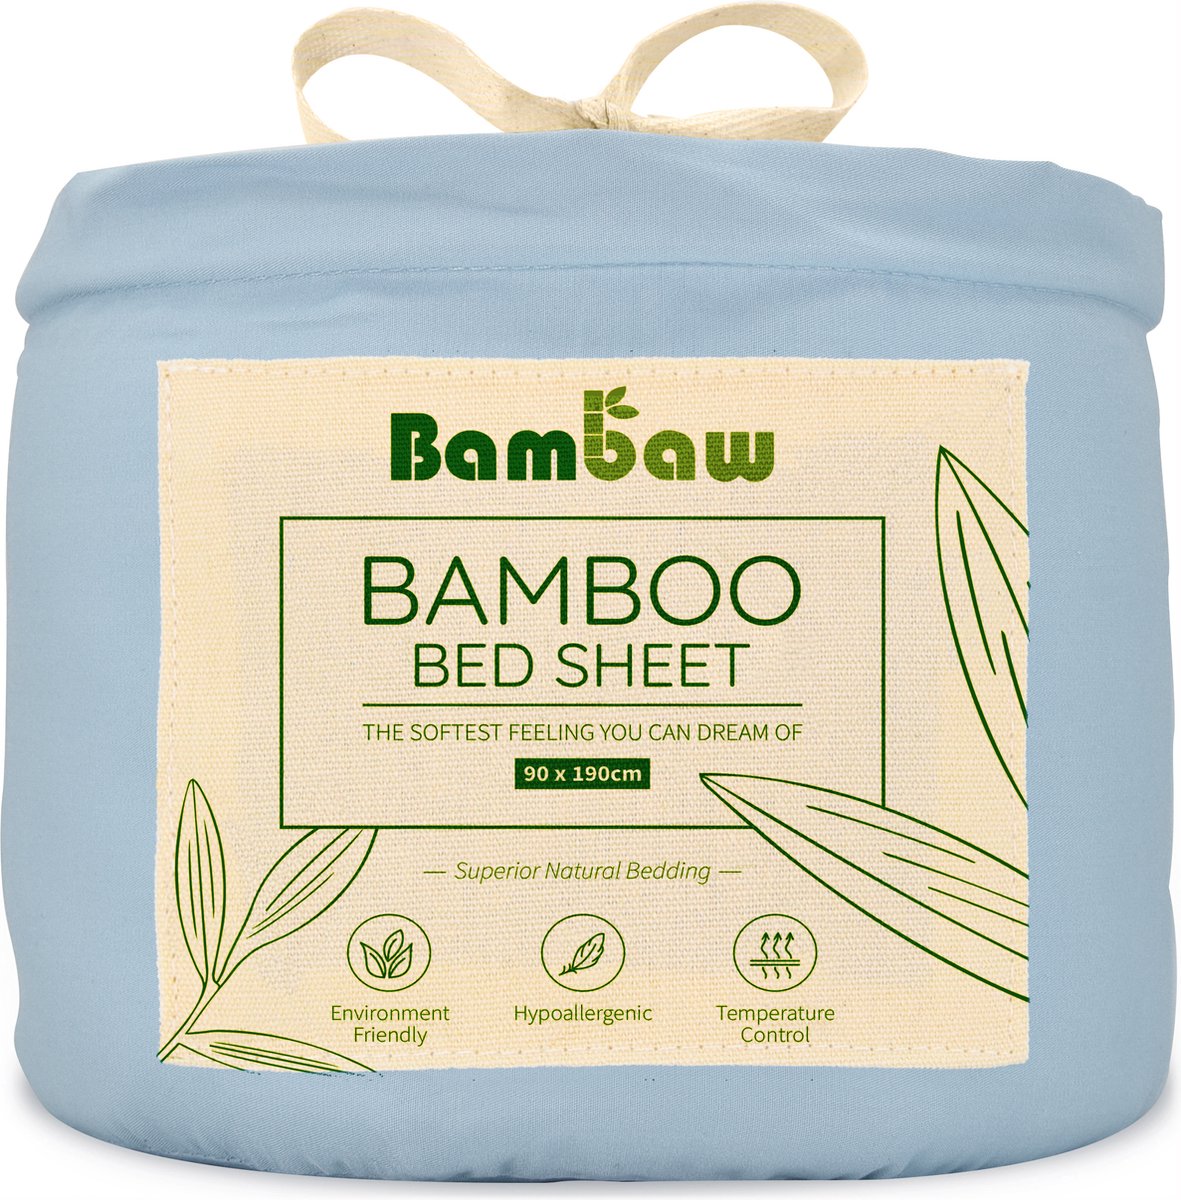 Bamboe Hoeslaken | 1-Persoons Eco Hoeslaken 90cm bij 190cm | Lichtblauw | Luxe Bamboe Beddengoed | Hypoallergeen Hoeslaken | Puur Bamboe Viscose Rayon hoeslaken | Ultra-ademende Stof |Bambaw